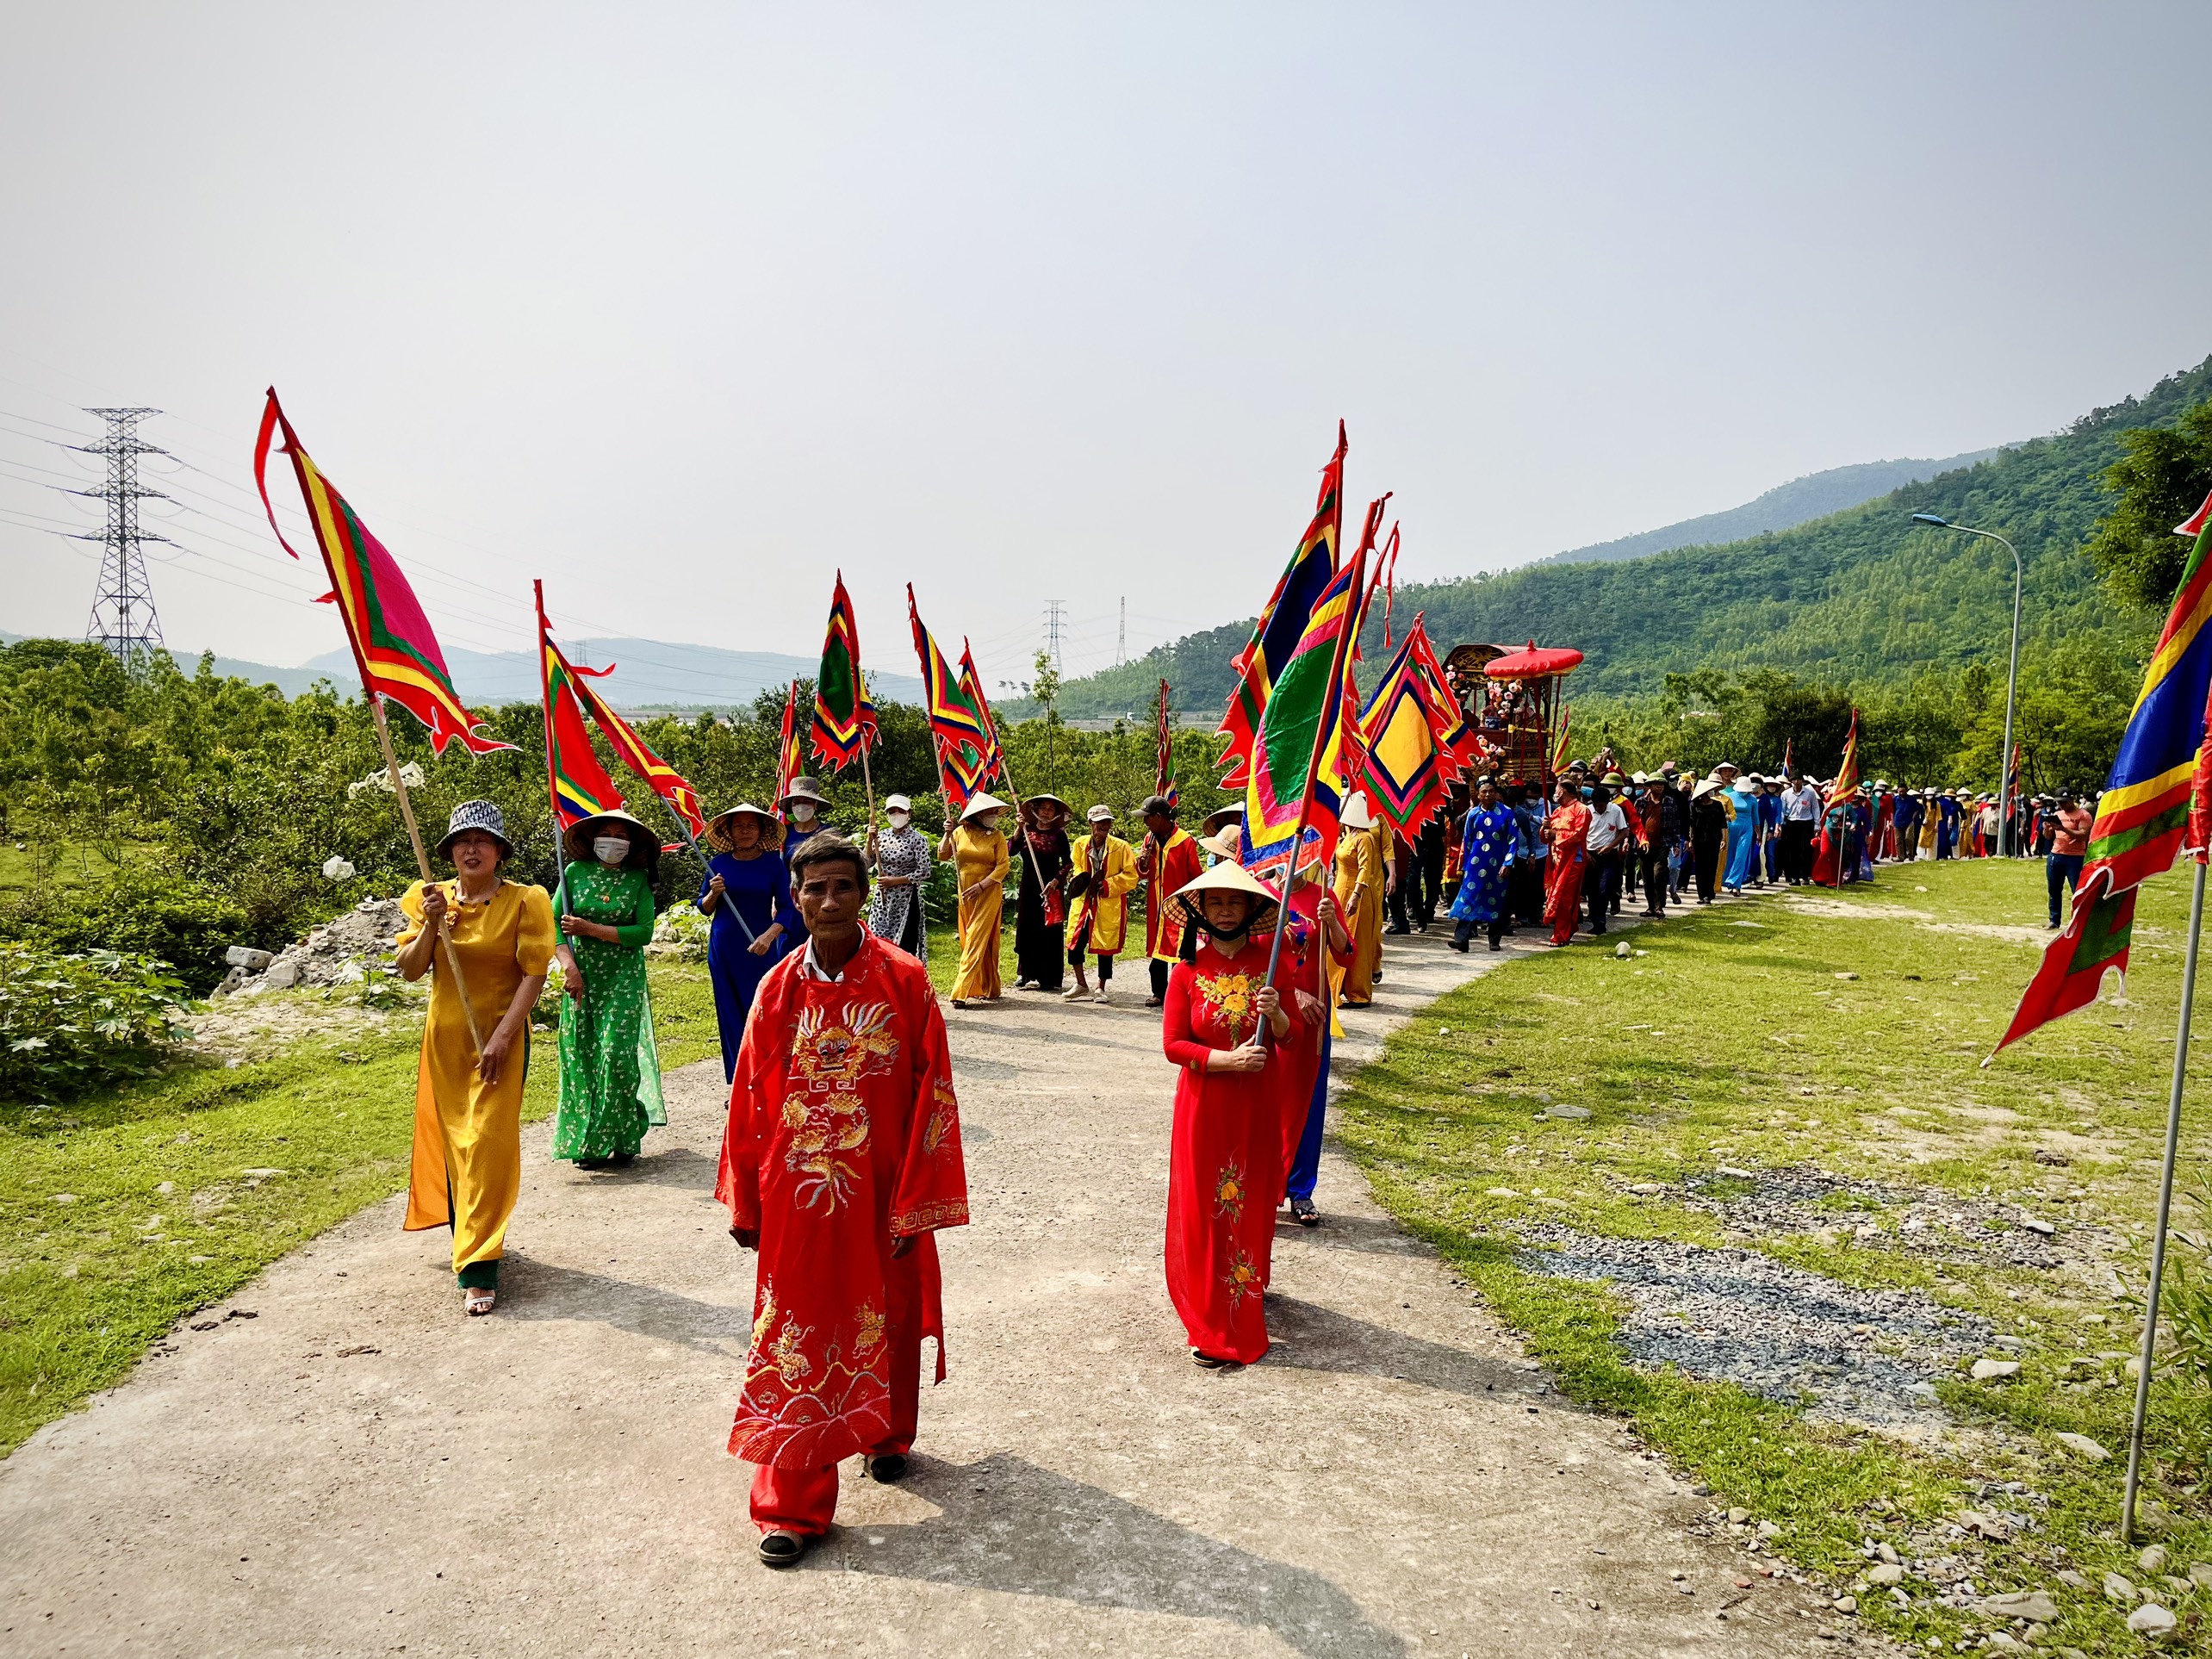 Đông đảo nhân dân và du khách tham gia lễ rước sắc phong 12 vị 2 vị thần Thành Hoàng từ đình làng Vịnh Sơn qua đền thờ Thánh Mẫu Liễu Hạnh trong sáng ngày 21/4 (tức 2/3 âm lịch).